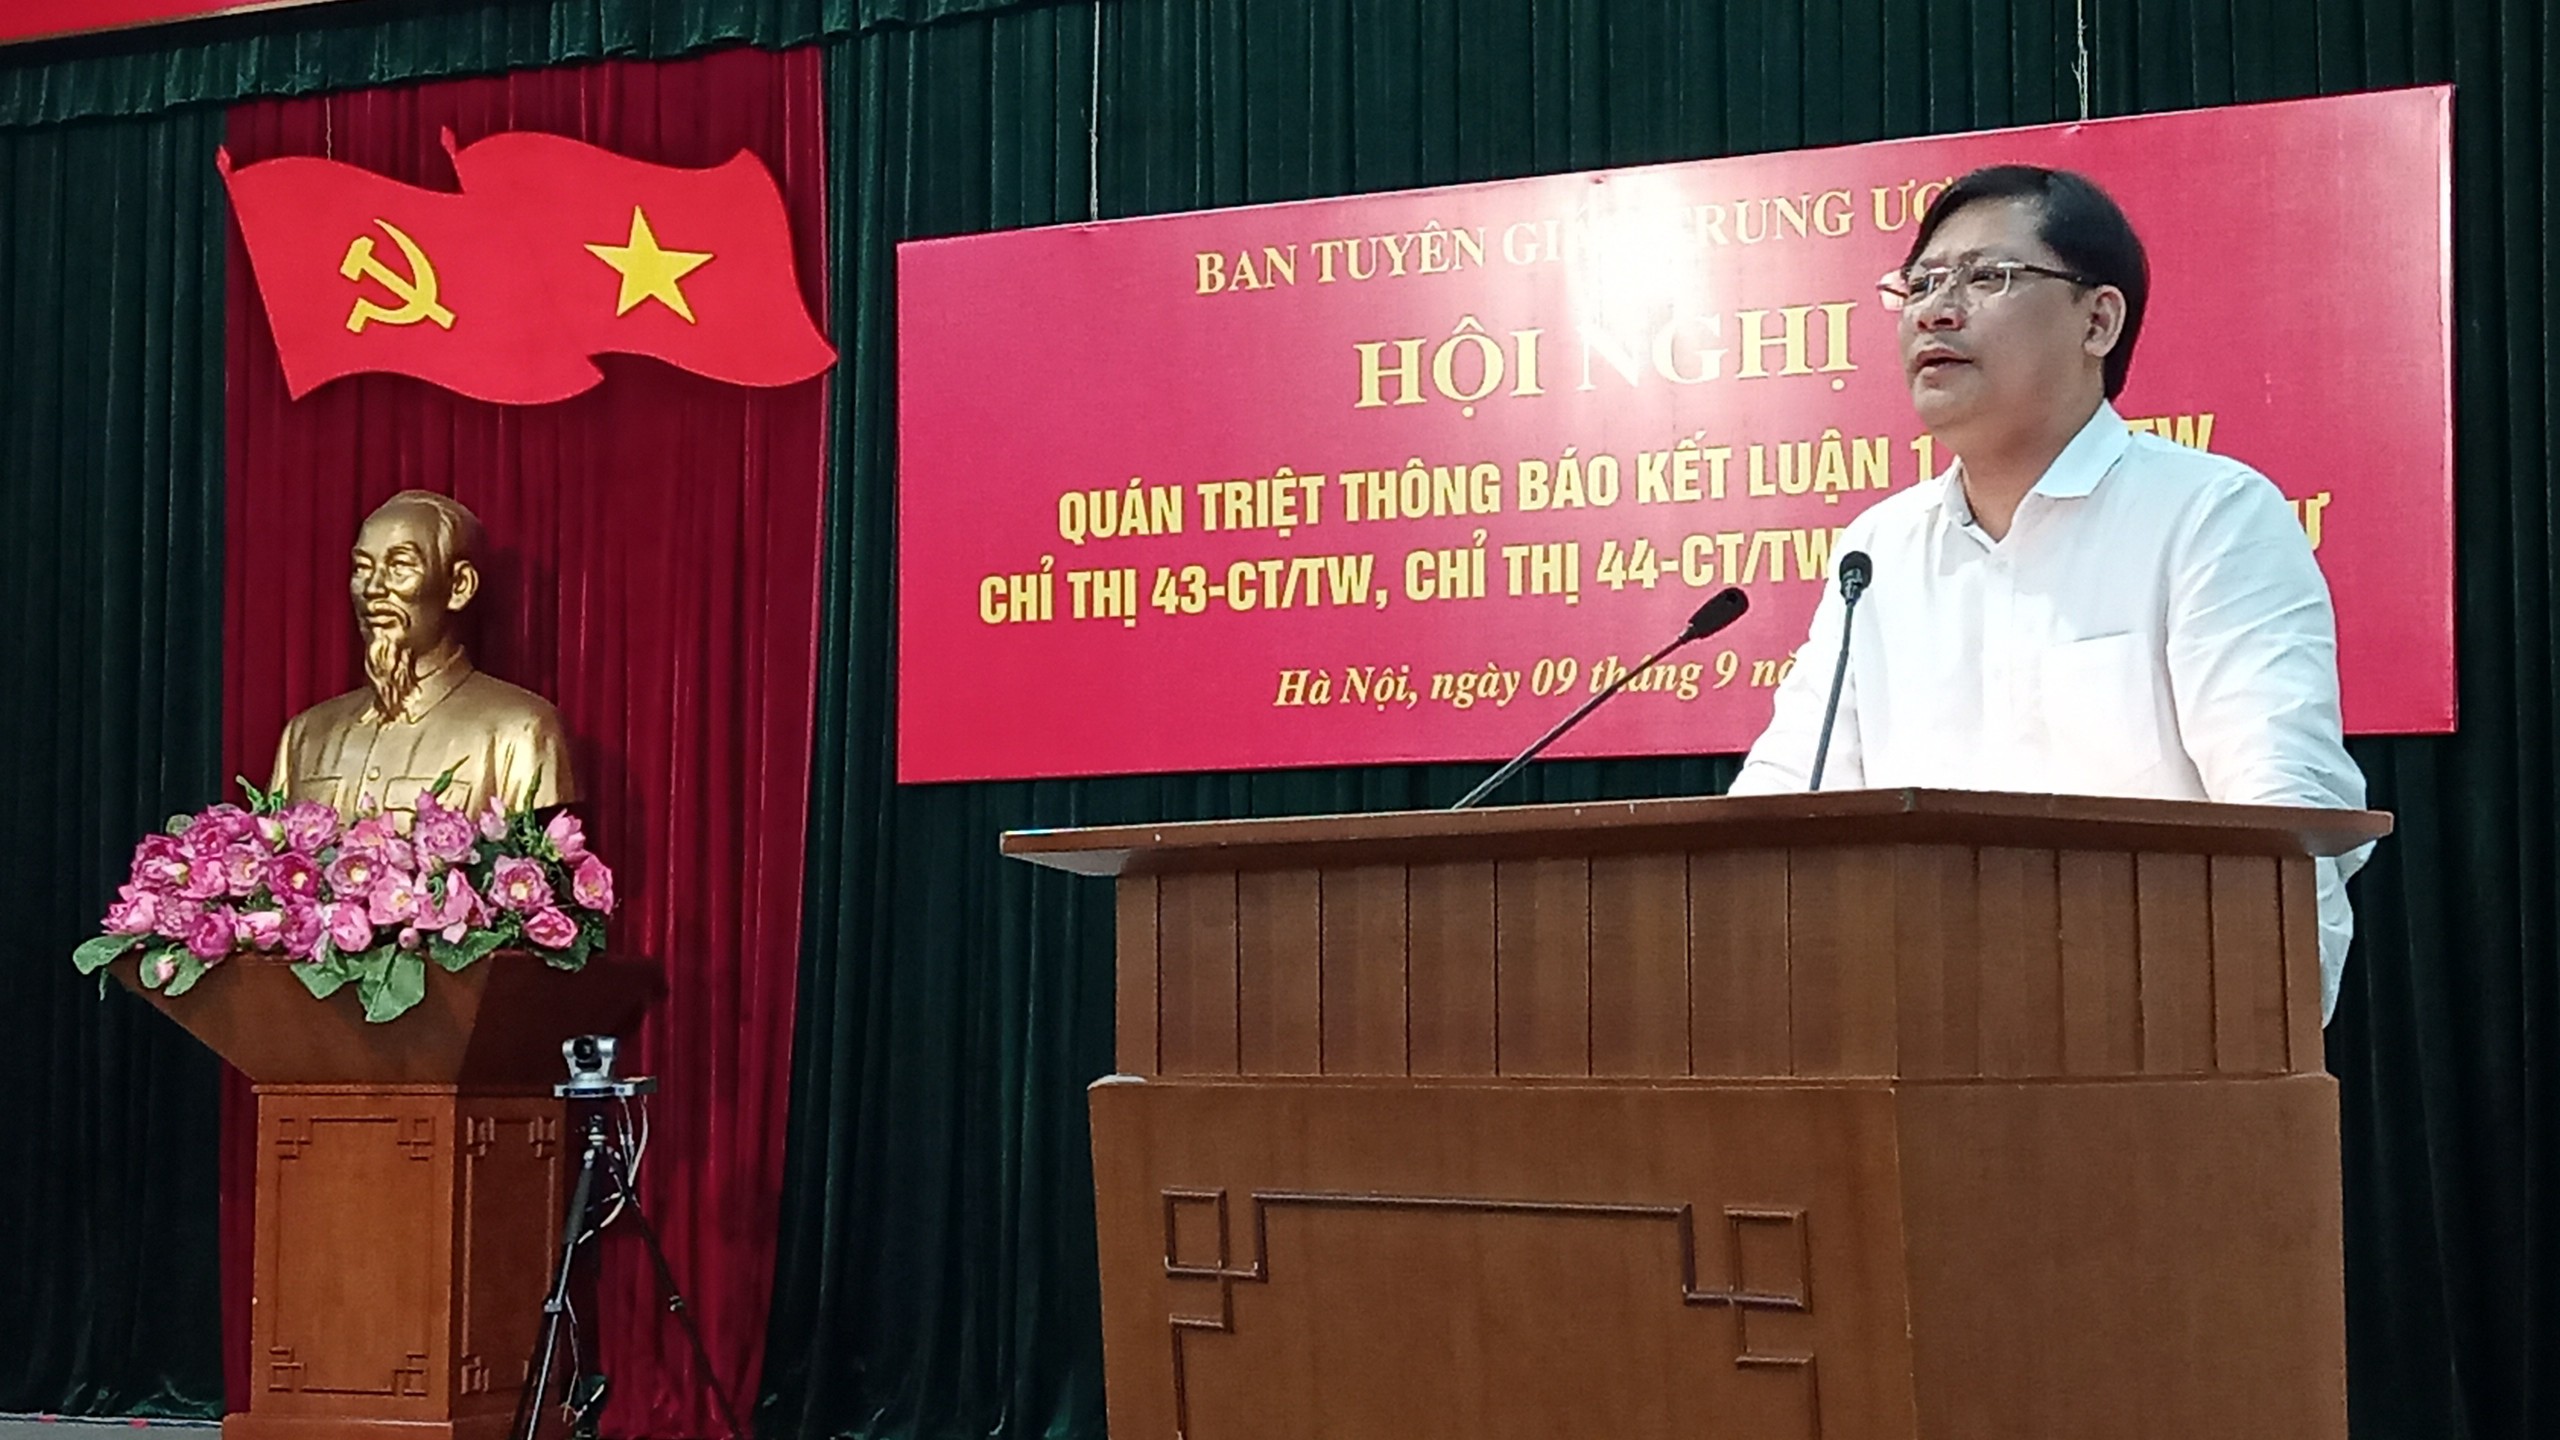 Tại Hội nghị quán triệt thông báo Kết luận số 173-TB/TW ngày 6/4/2020 của Ban Bí thư, Tổng giám đốc Tổng công ty Chu Quang Hào nhấn mạnh, công tác phát hành báo và tạp chí của Đảng là một trong những nhiệm vụ chính trị quan trọng của Bưu điện Việt Nam.